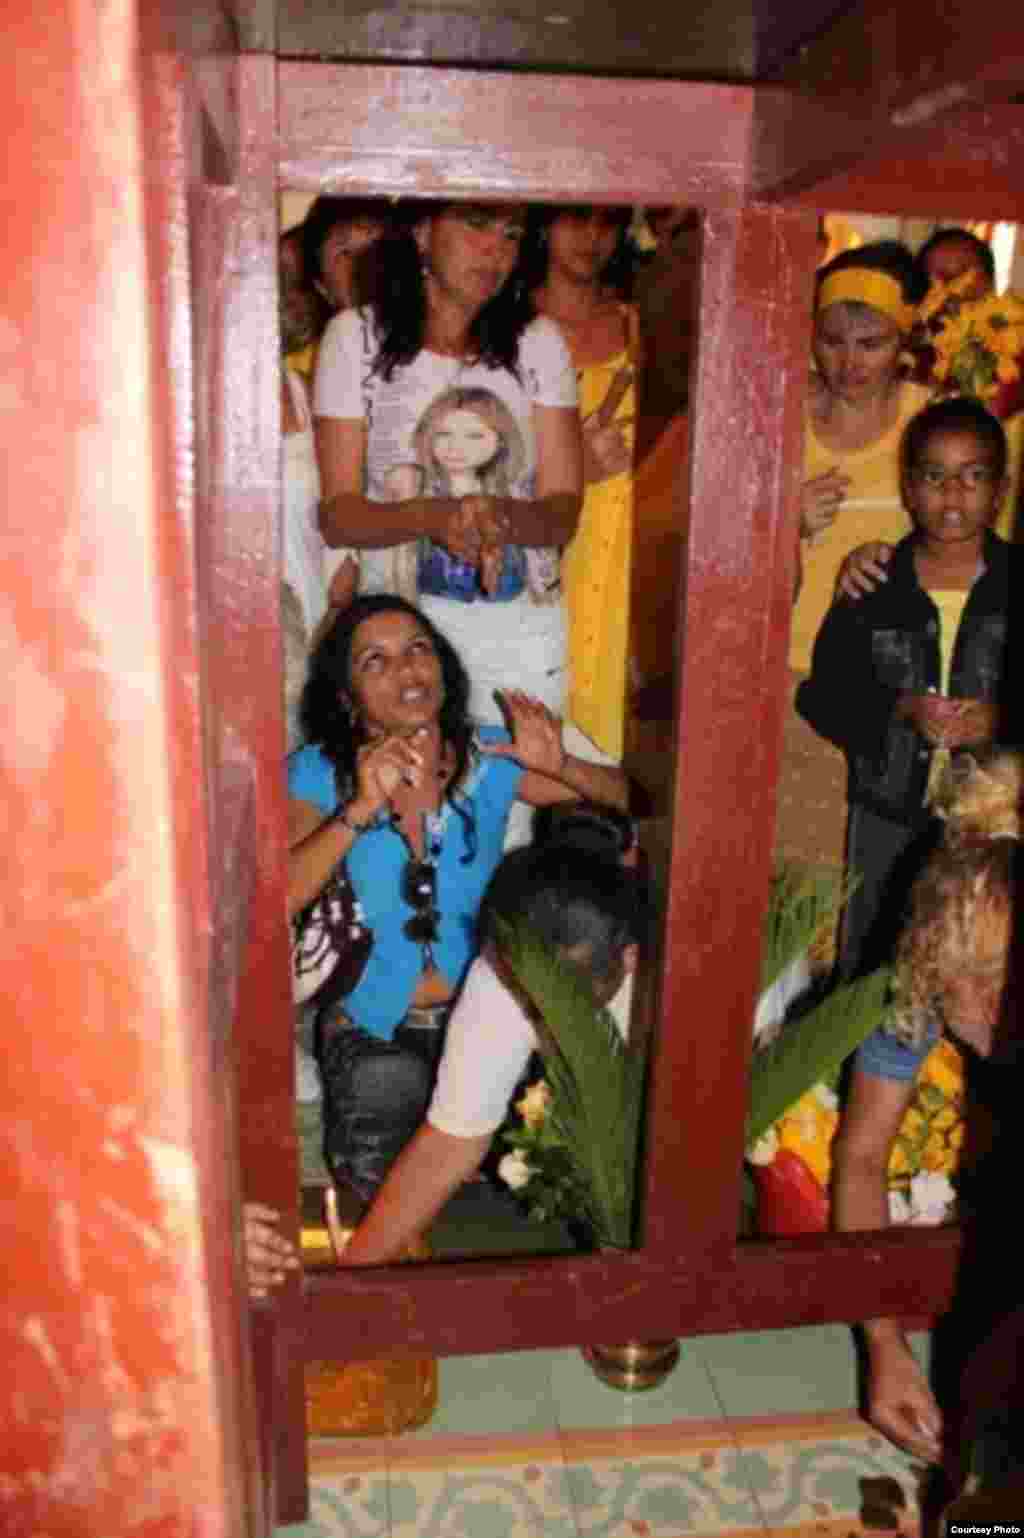 La Virgen de la Caridad recorre Cuba